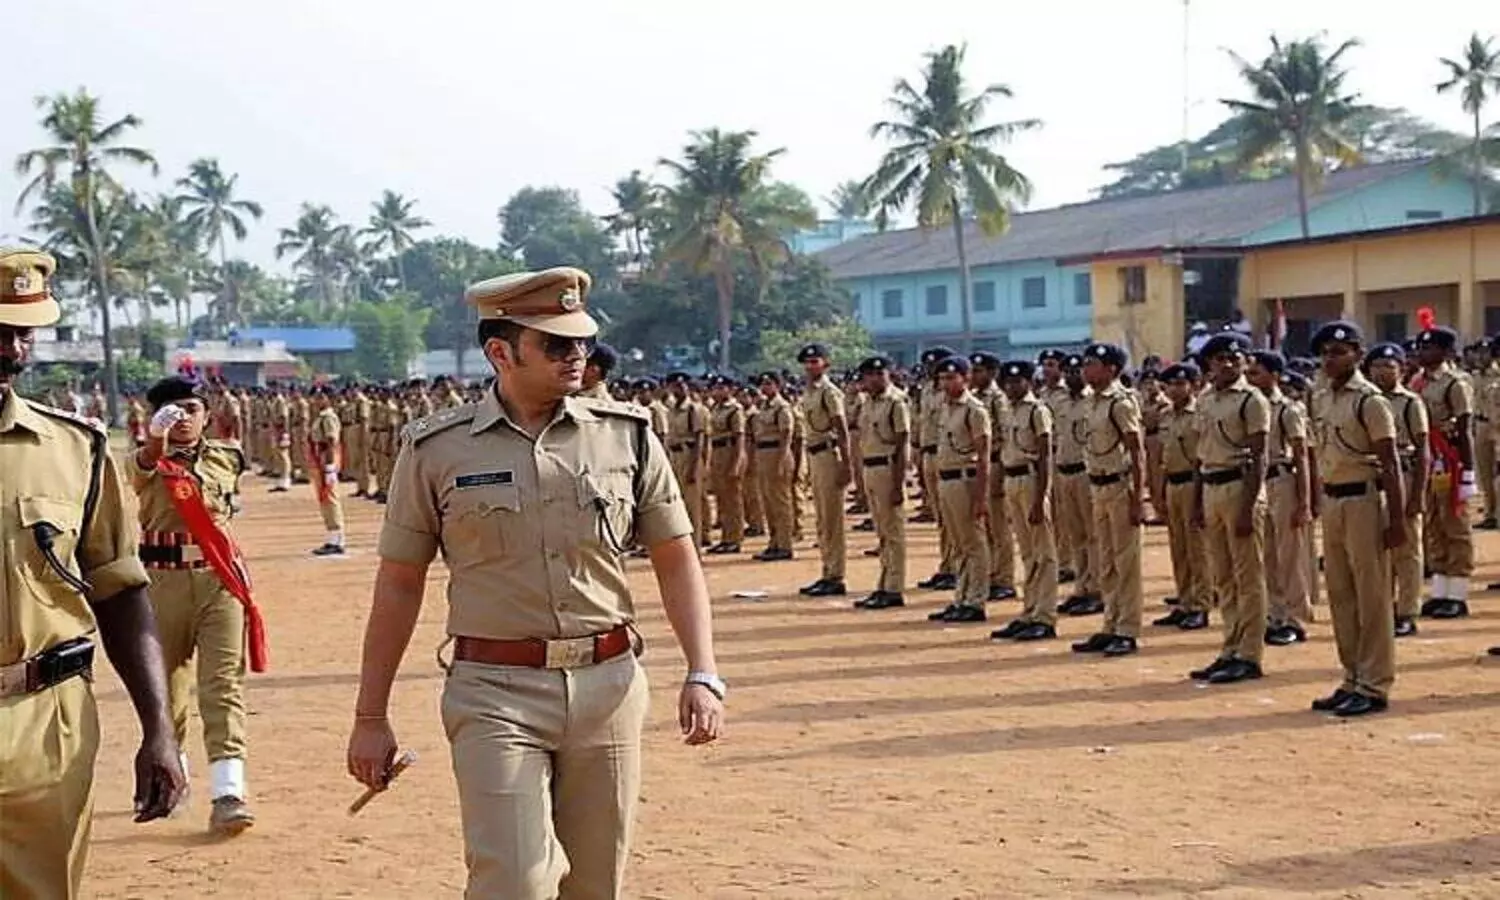 Police Raj in India